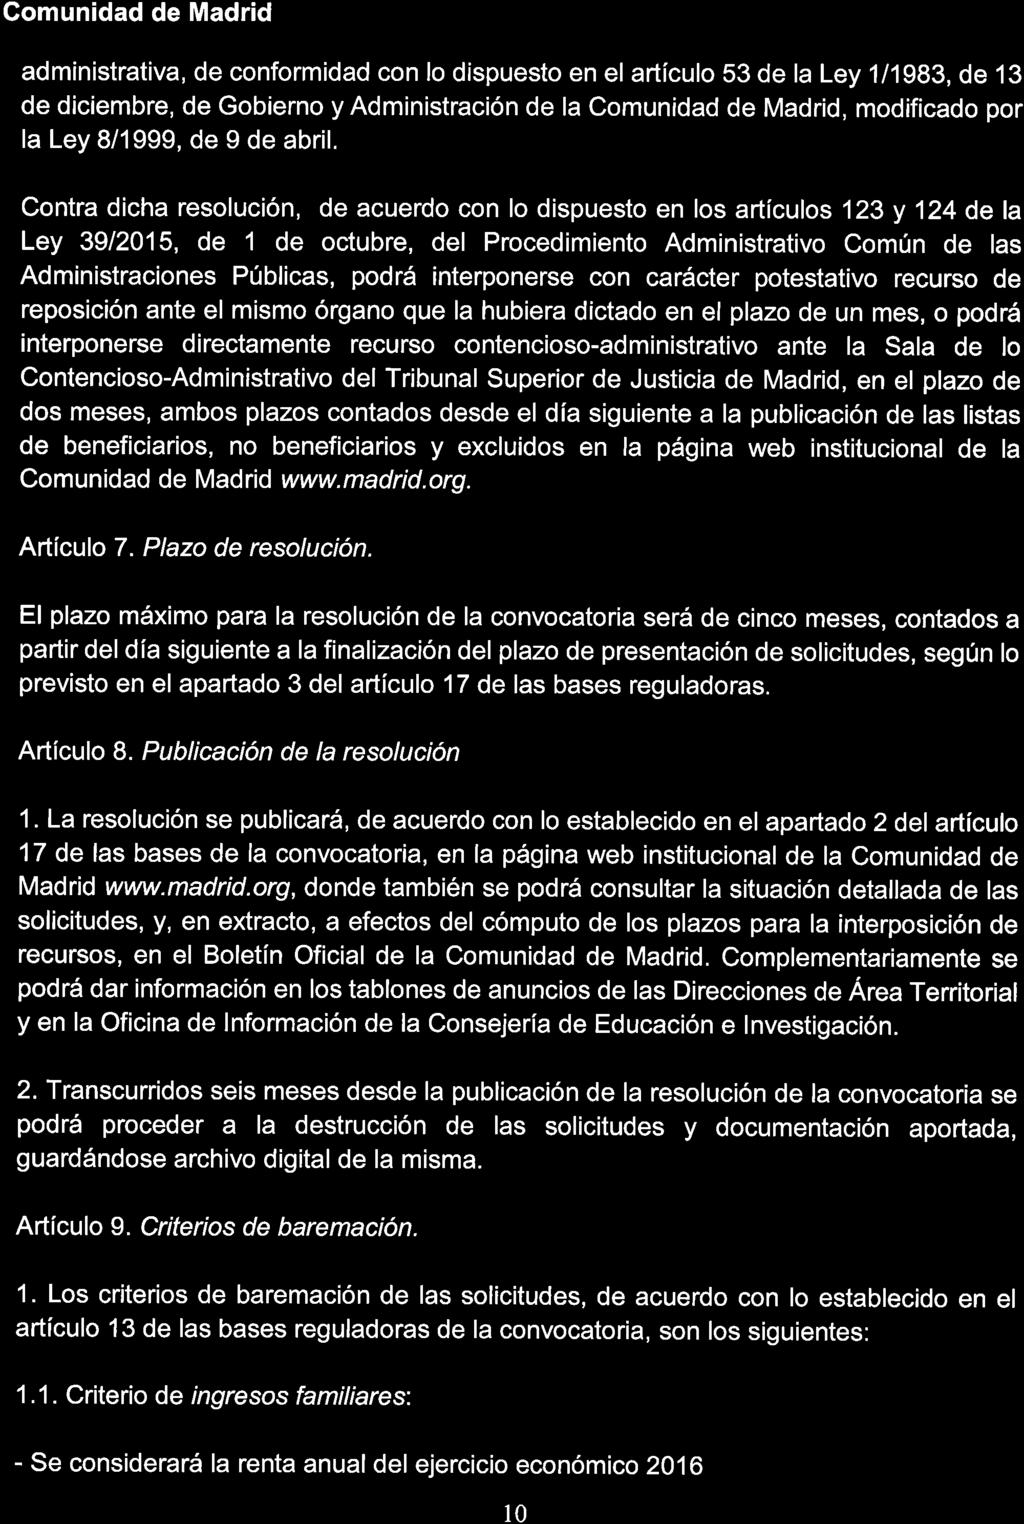 administrativa, de conformidad con lo dispuesto en el artículo 53 de la Ley 1/1983, de 13 de diciembre, de Gobierno y Administración de la Comunidad de Madrid, modificado por la Ley 8/1999, de 9 de